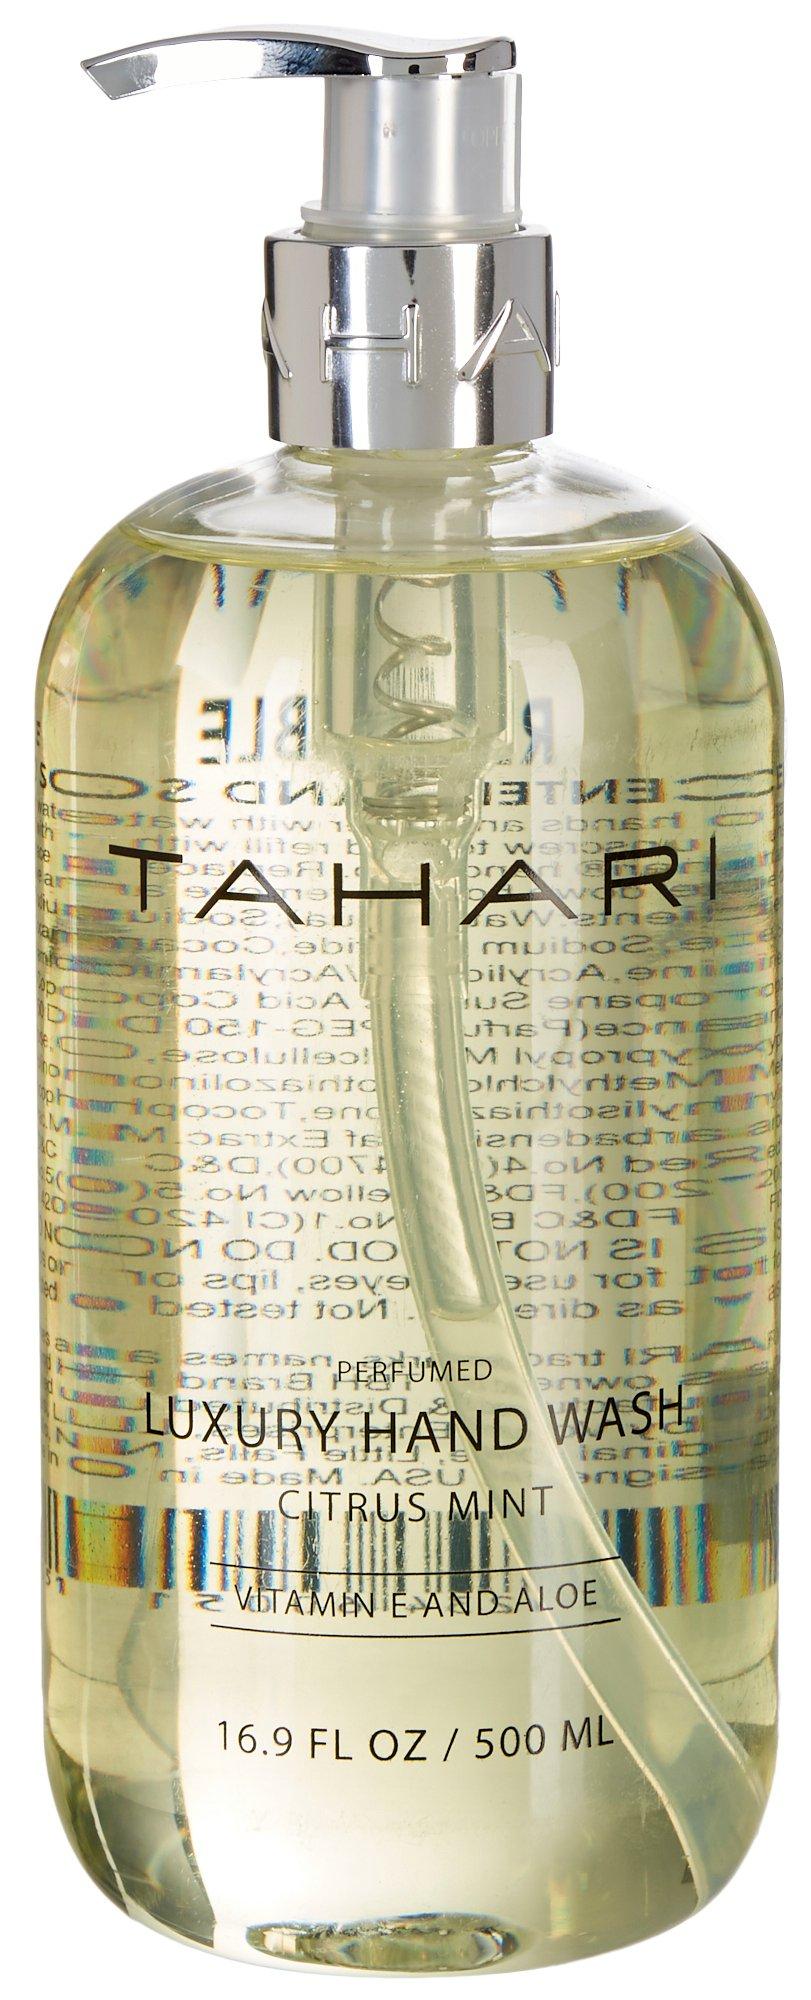 TAHARI Citrus Mint Vitamin & Aloe Luxury Hand Wash